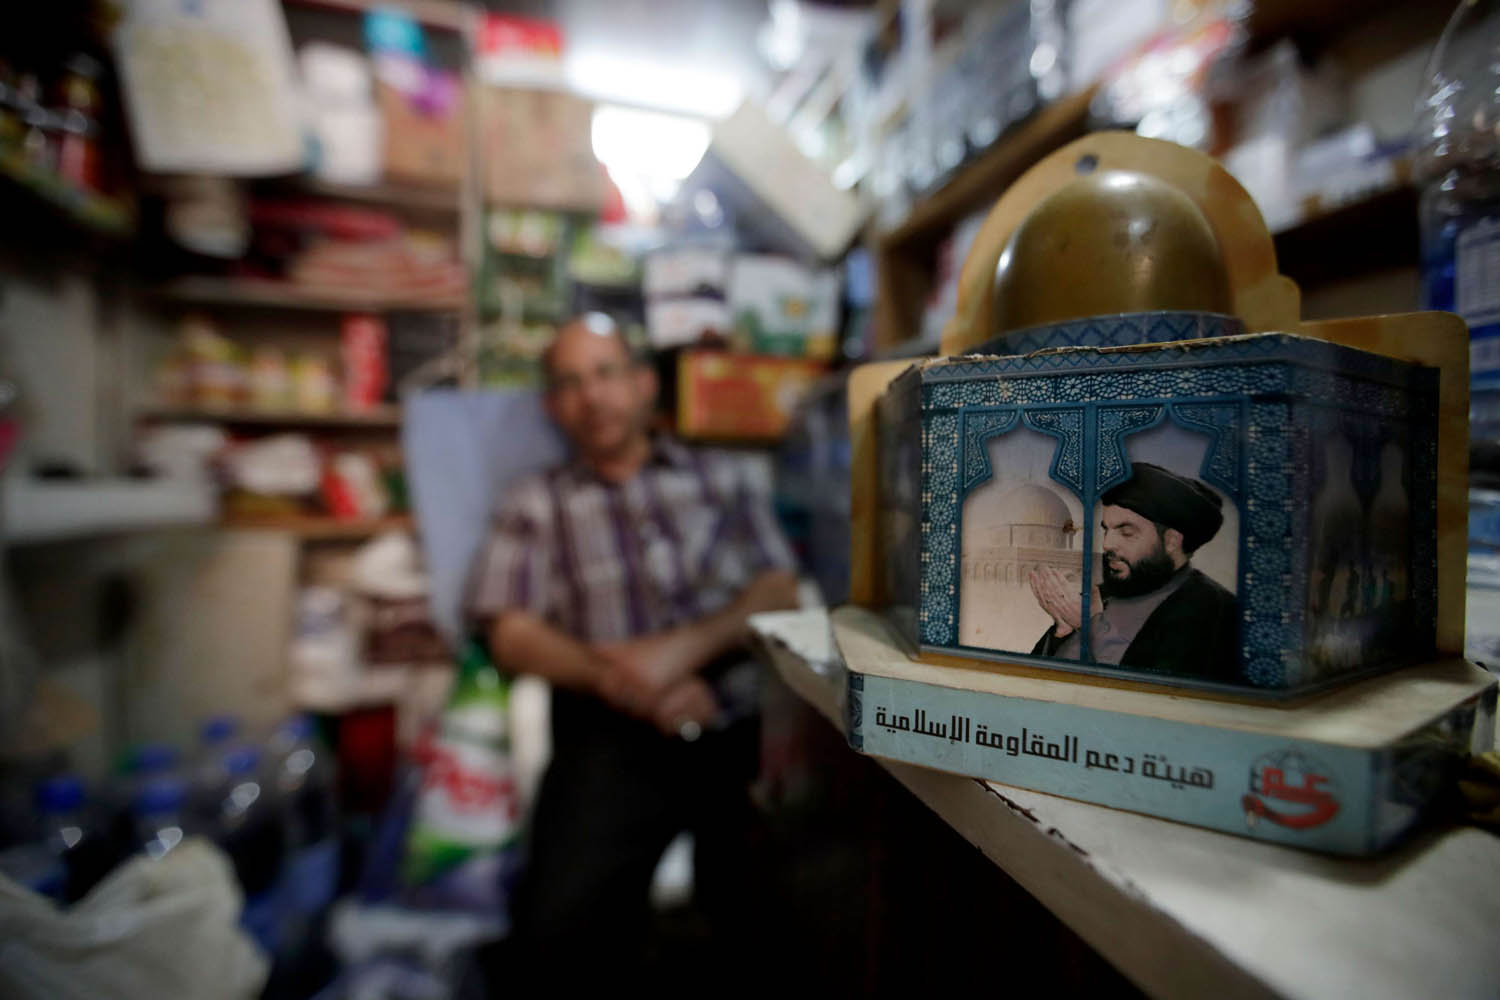 صندوق تبرعات في دكان لبناني لصالح حزب الله